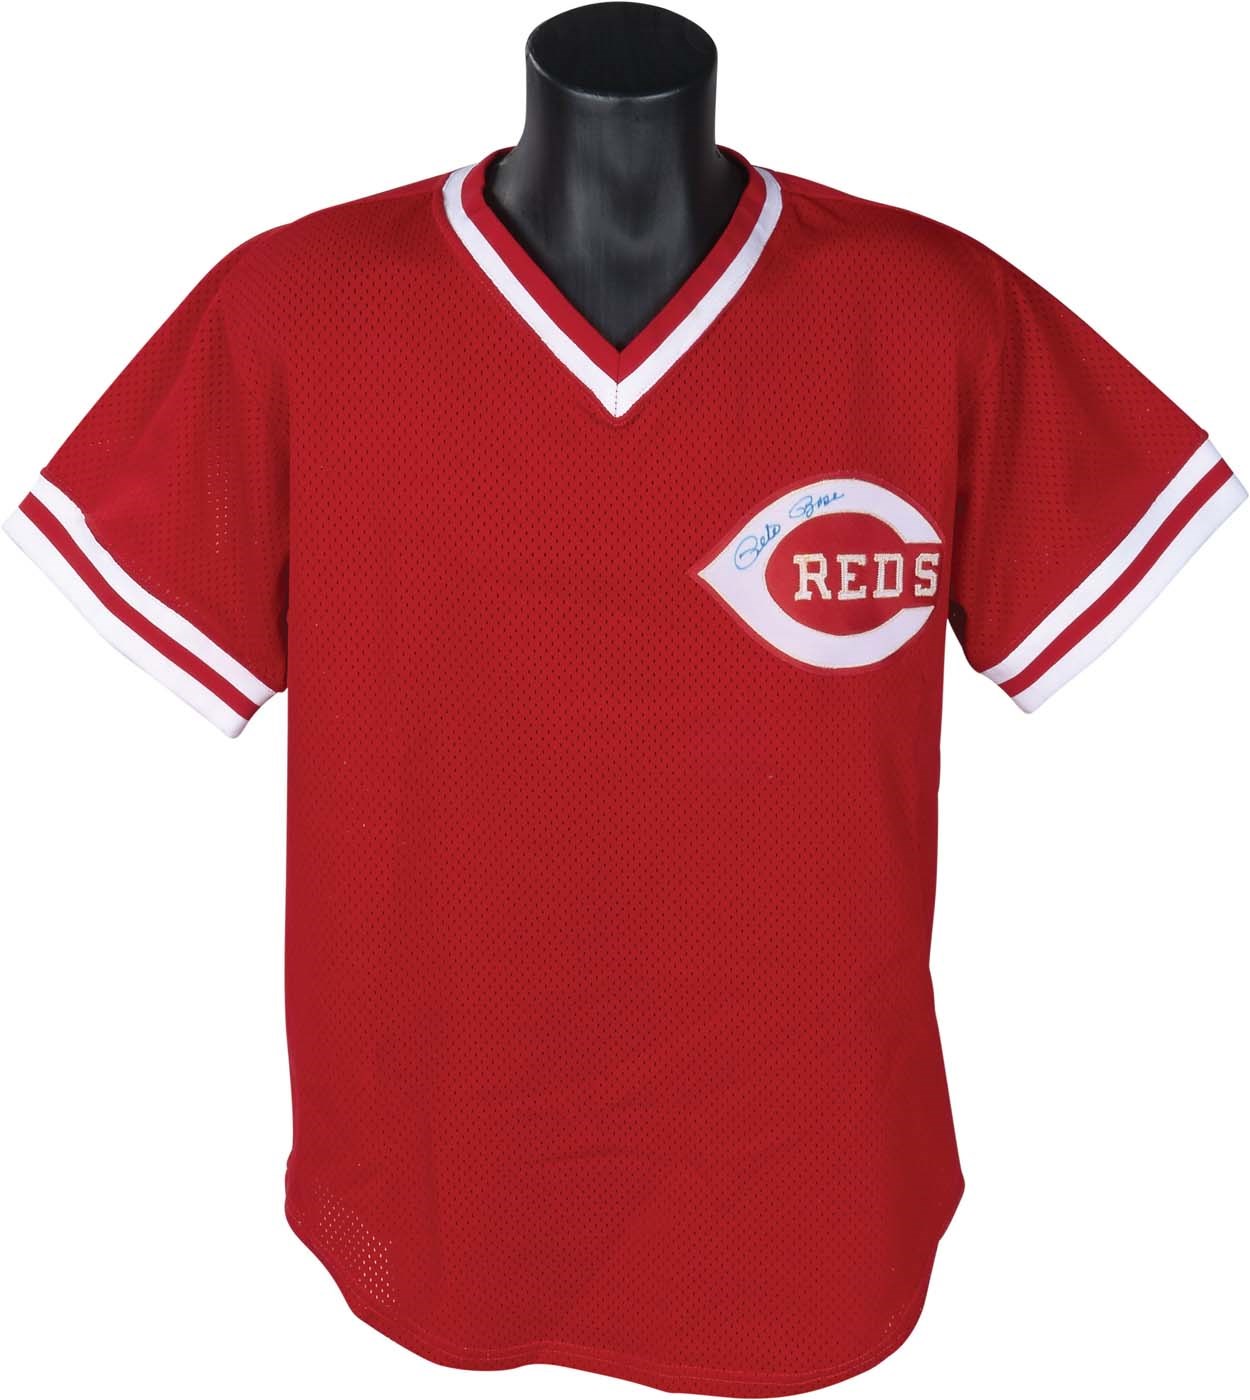 Pete Rose & Cincinnati Reds - Circa 1984 Pete Rose Cincinnati Reds Batting Practice Jersey